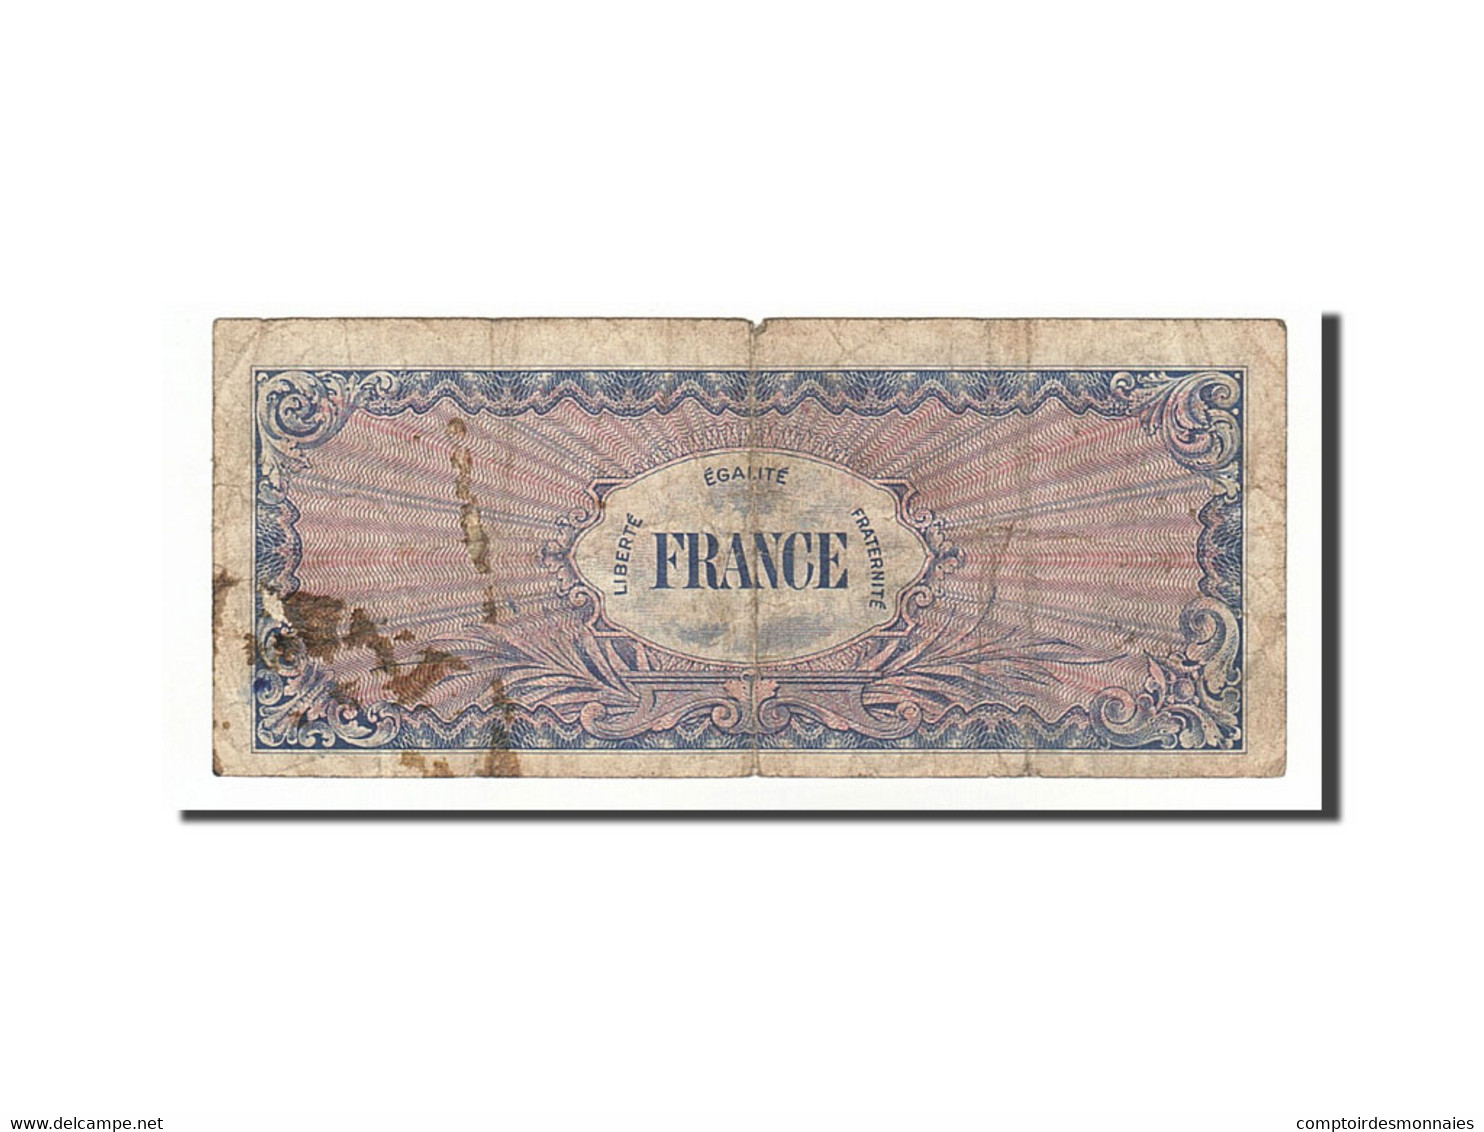 Billet, France, 50 Francs, 1945 Verso France, 1945, 1945-06-04, TB - 1945 Verso France